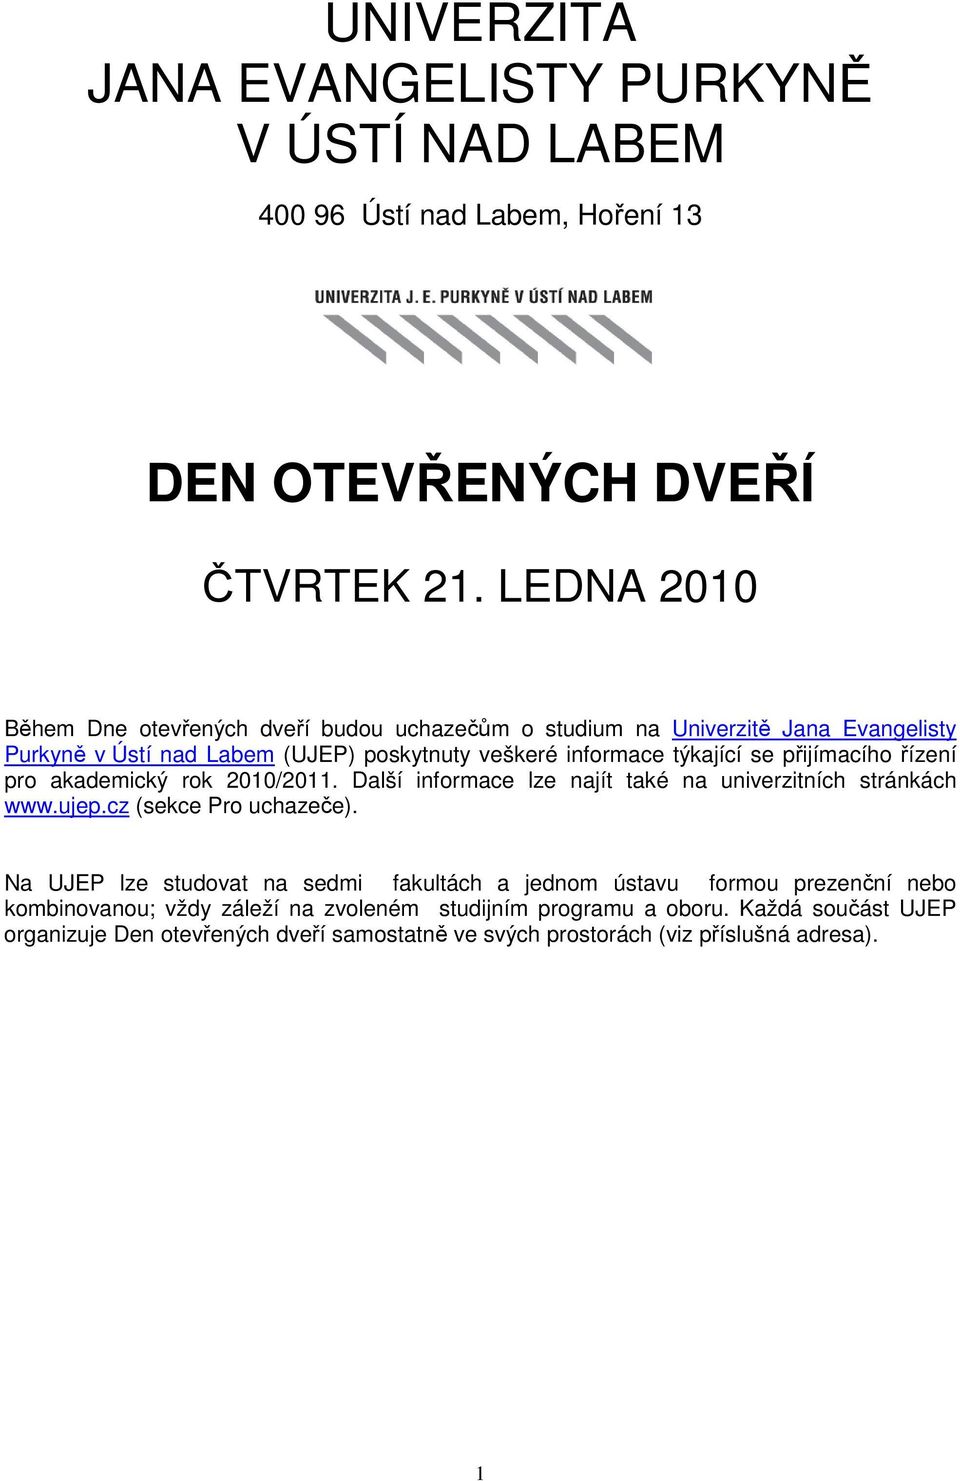 přijímacího řízení pro akademický rok 2010/2011. Další informace lze najít také na univerzitních stránkách www.ujep.cz (sekce Pro uchazeče).